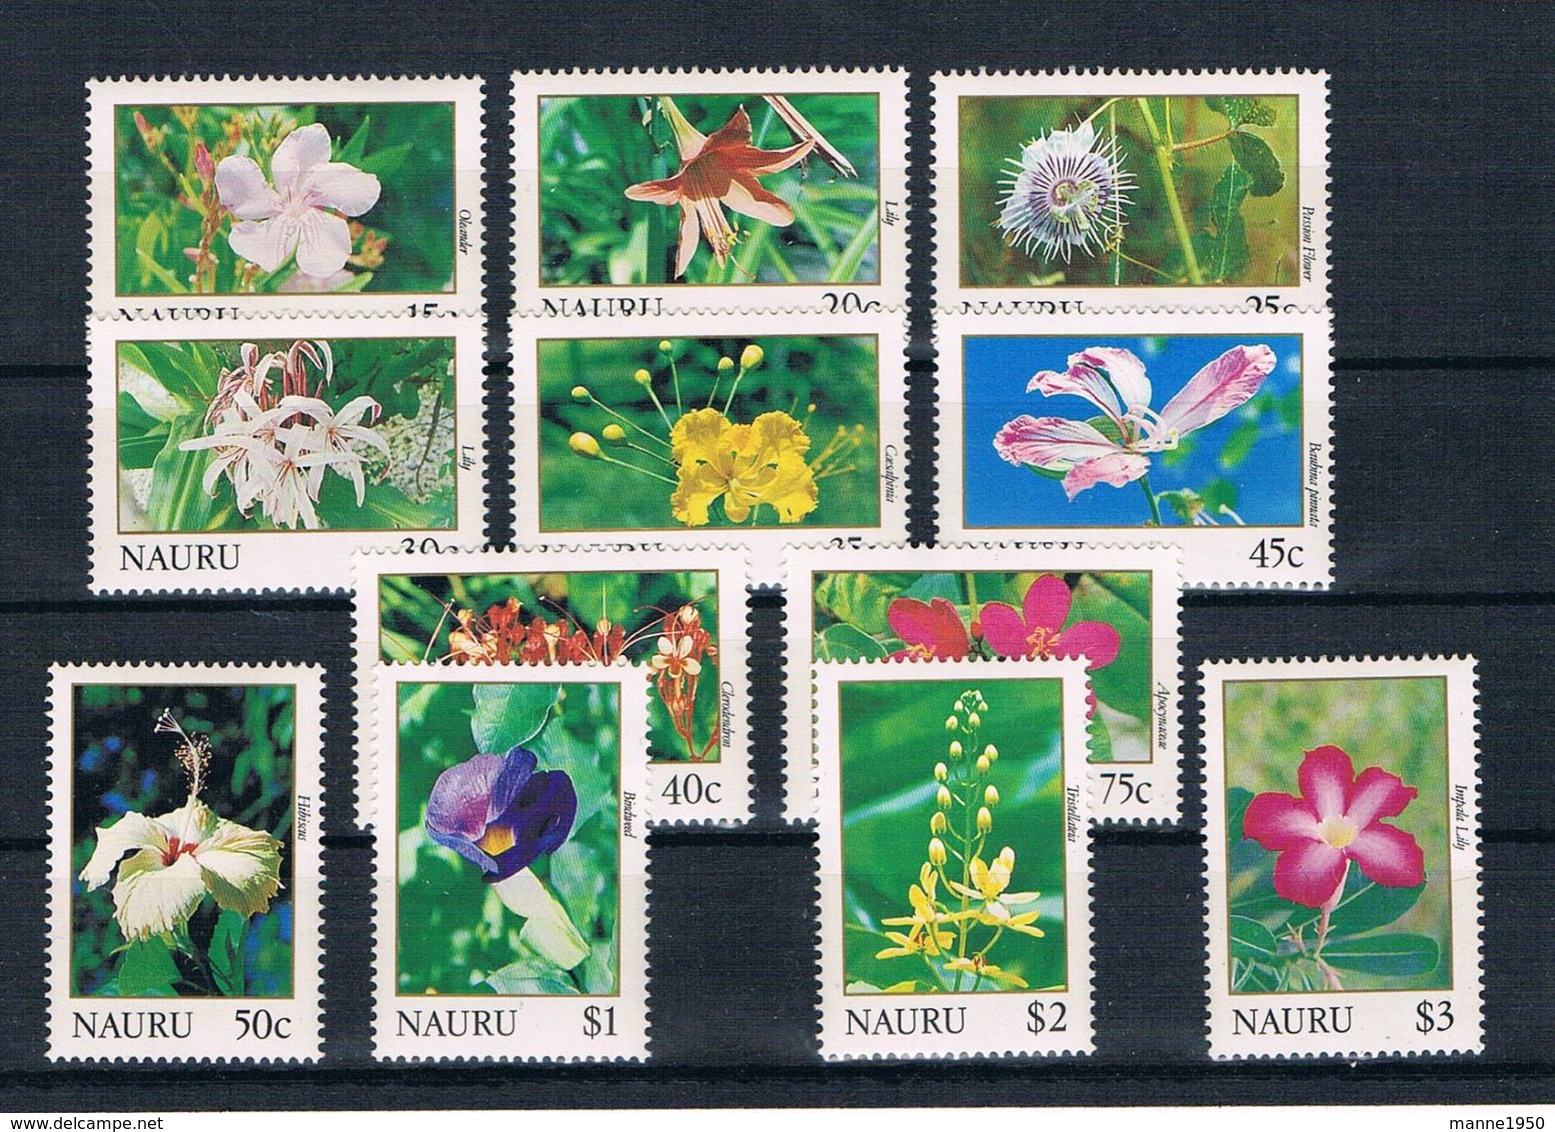 Nauru 1991 Blumen Mi.Nr. 375/86 Kpl. Satz ** - Nauru